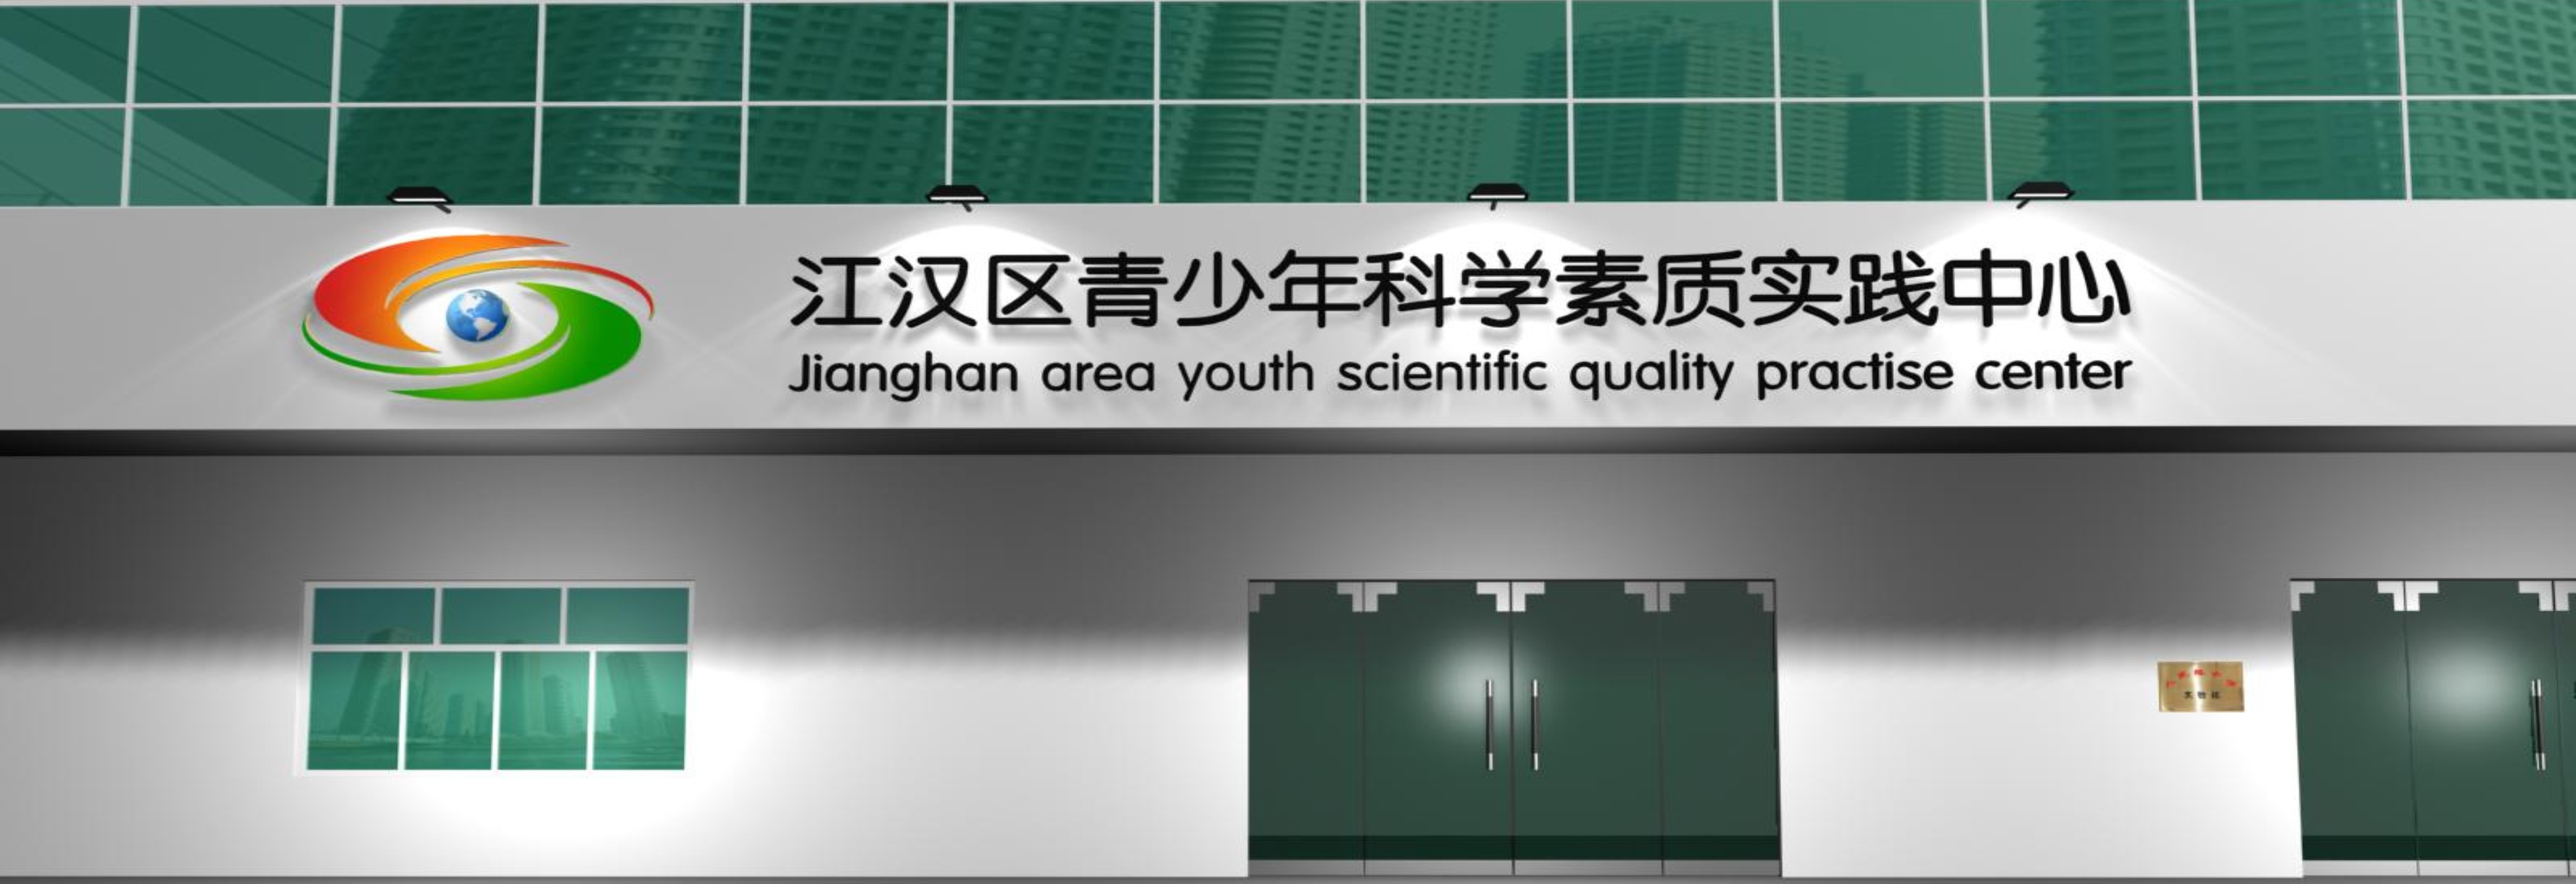 江汉区青少年活动实践中心中标方案